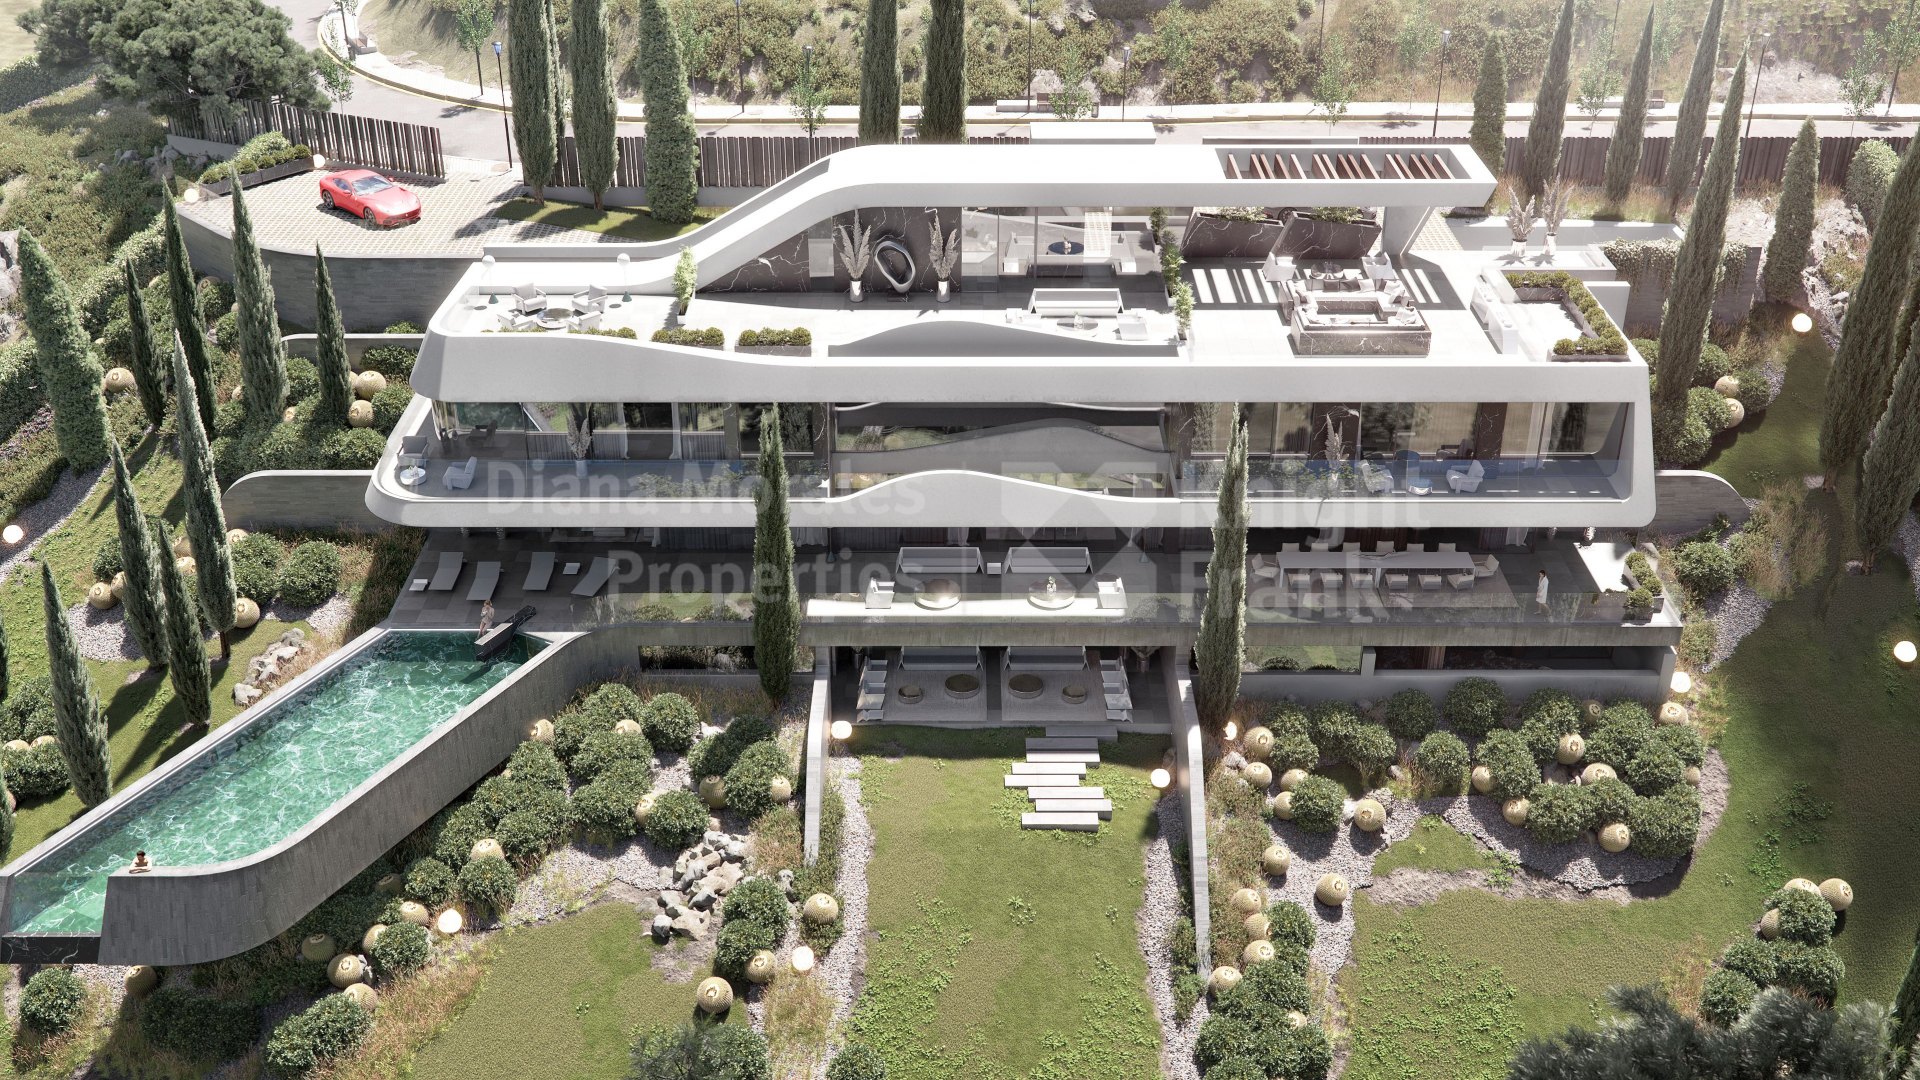 Real de La Quinta, Schlüsselfertiges Projekt einer Ultra-Design-Villa mit unschlagbarem Ausblick